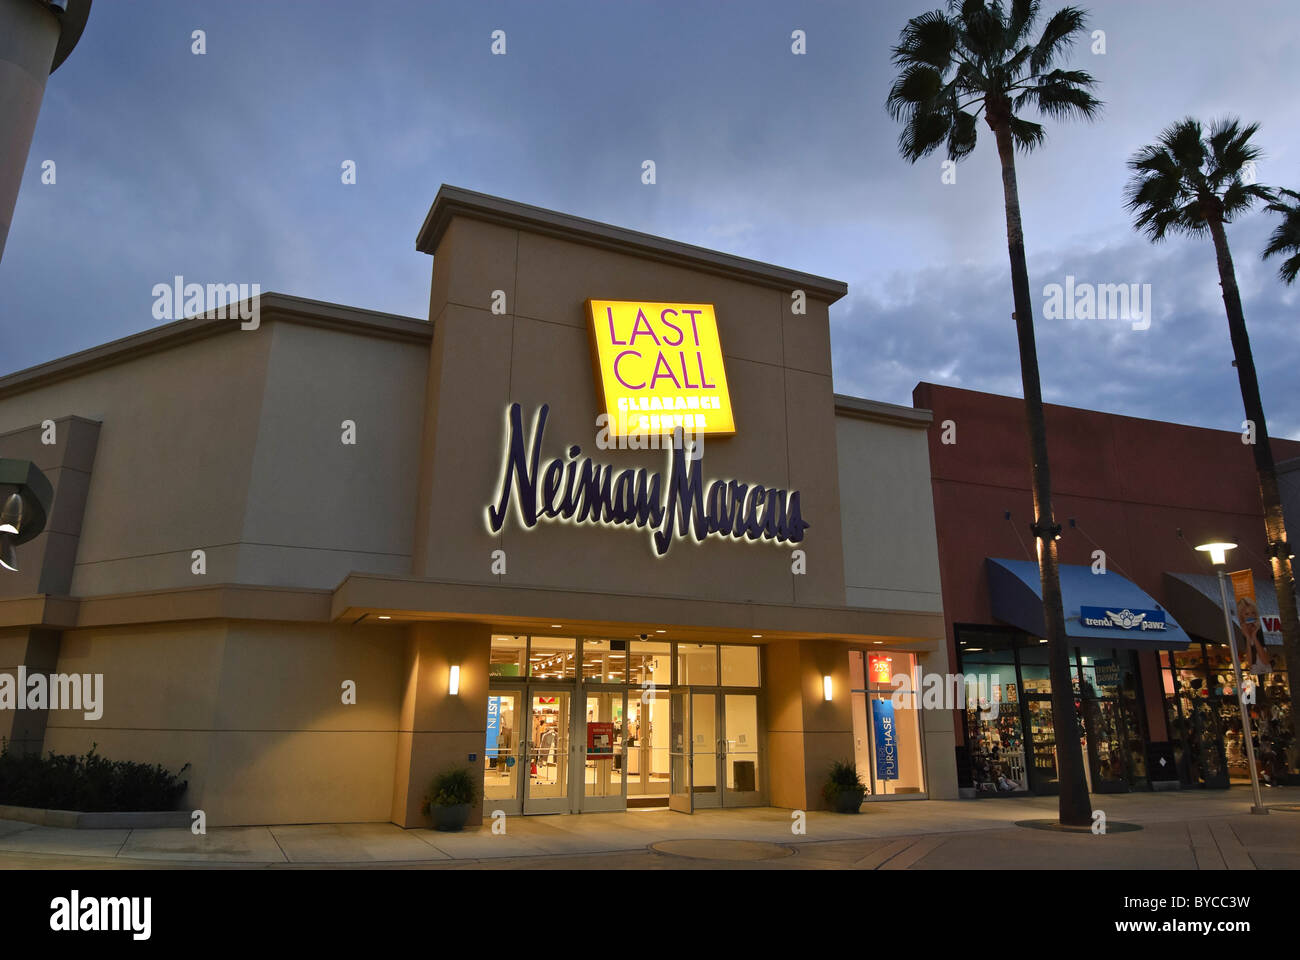 Neiman Marcus Ultima chiamata Outlet Store al blocco in arancione in California. Foto Stock